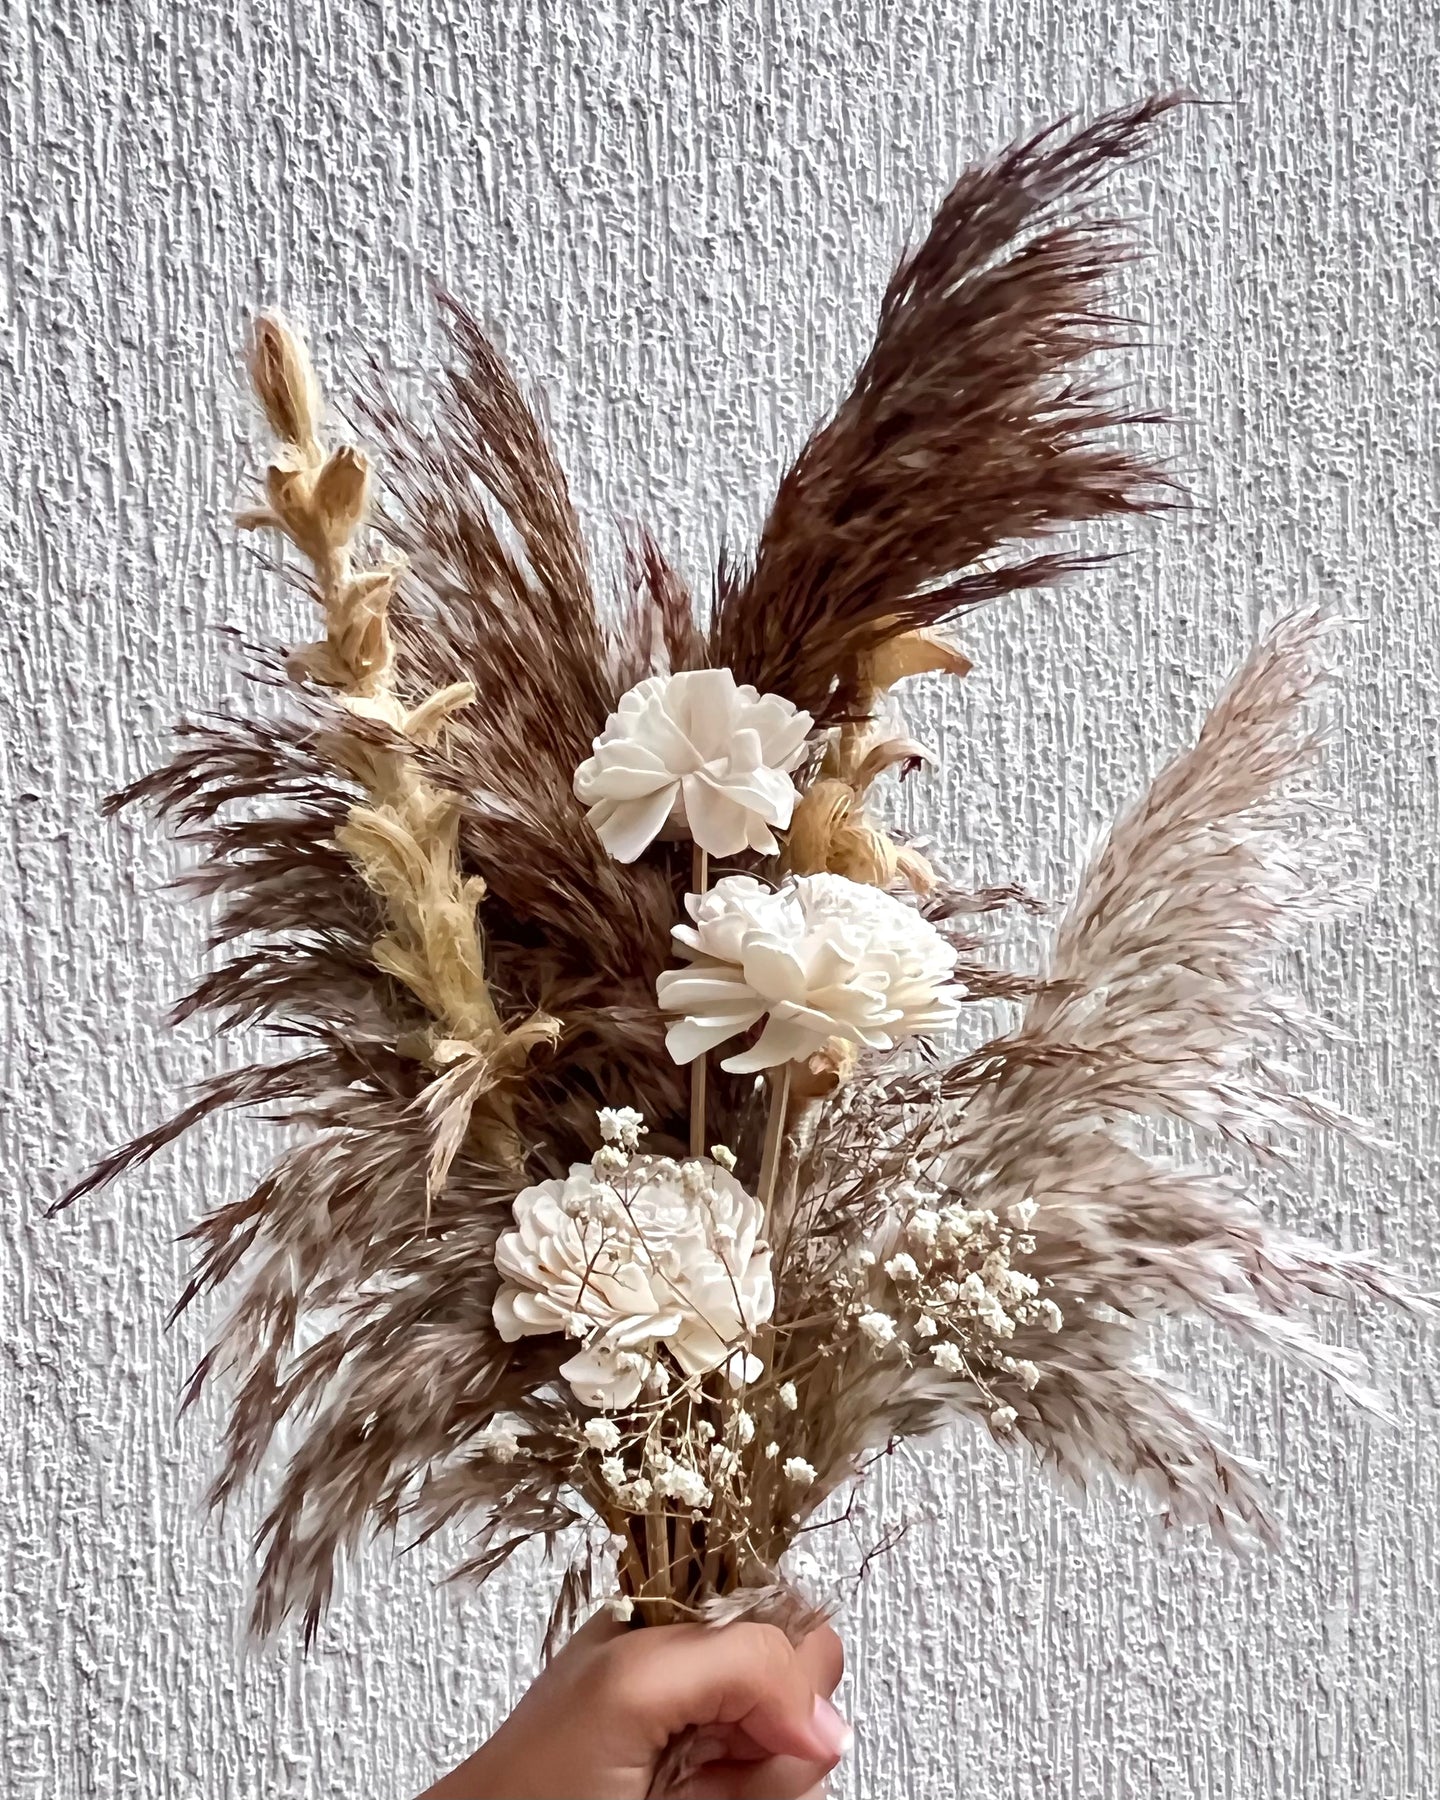 Woodrose dried flower